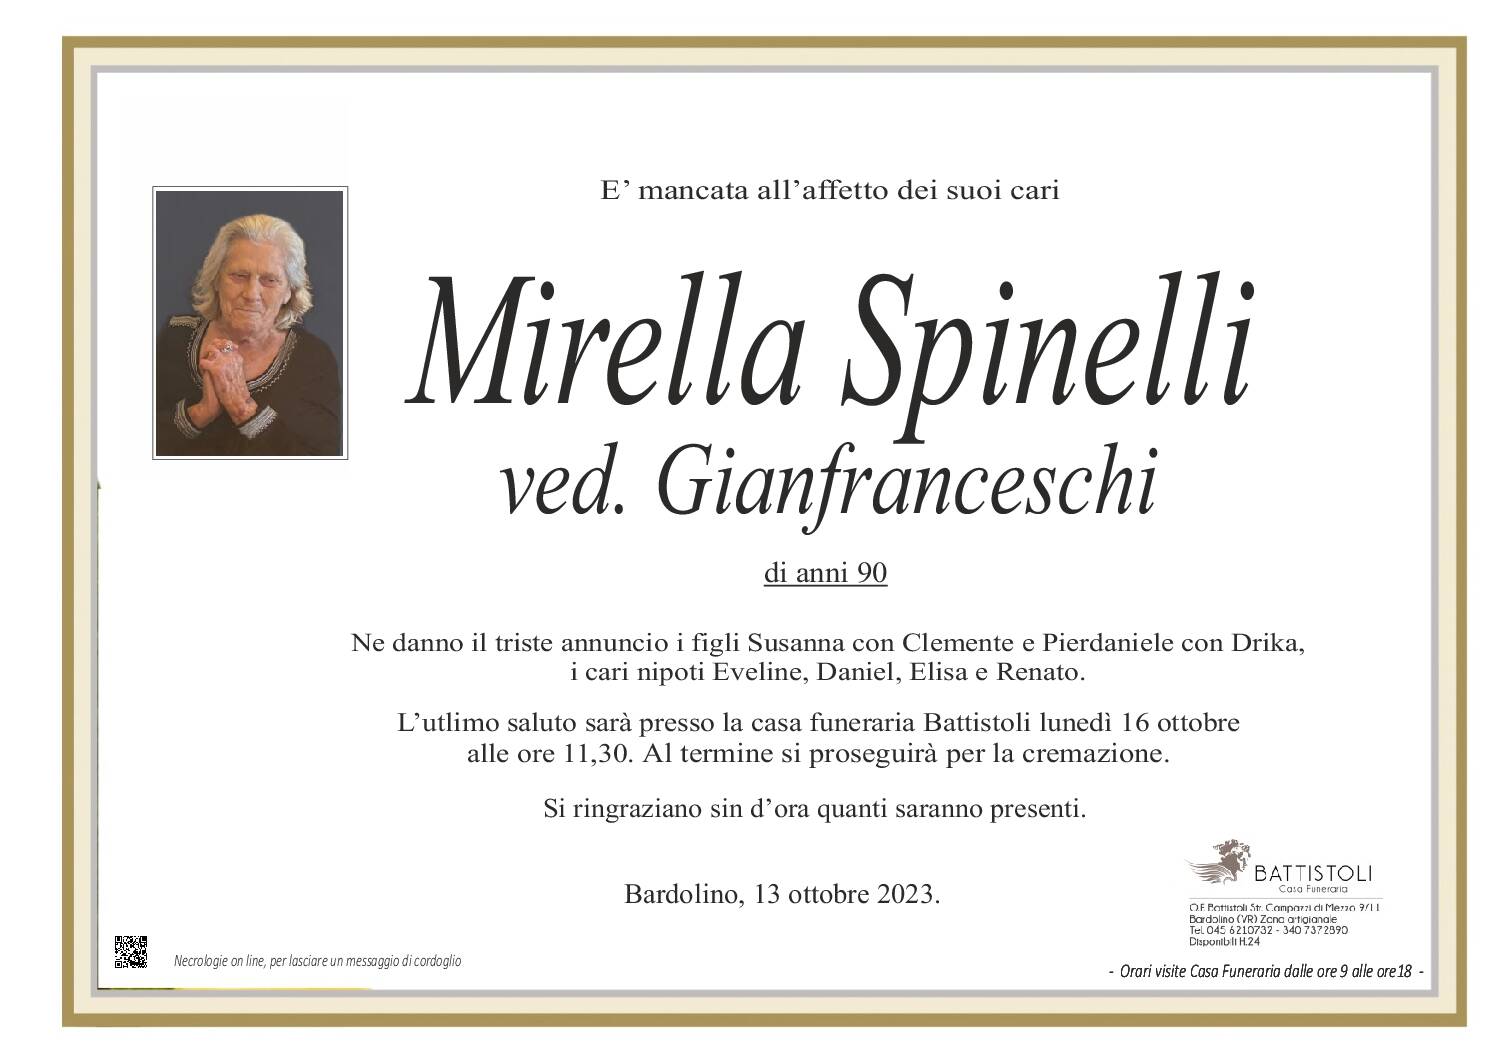 Spinelli Mirella